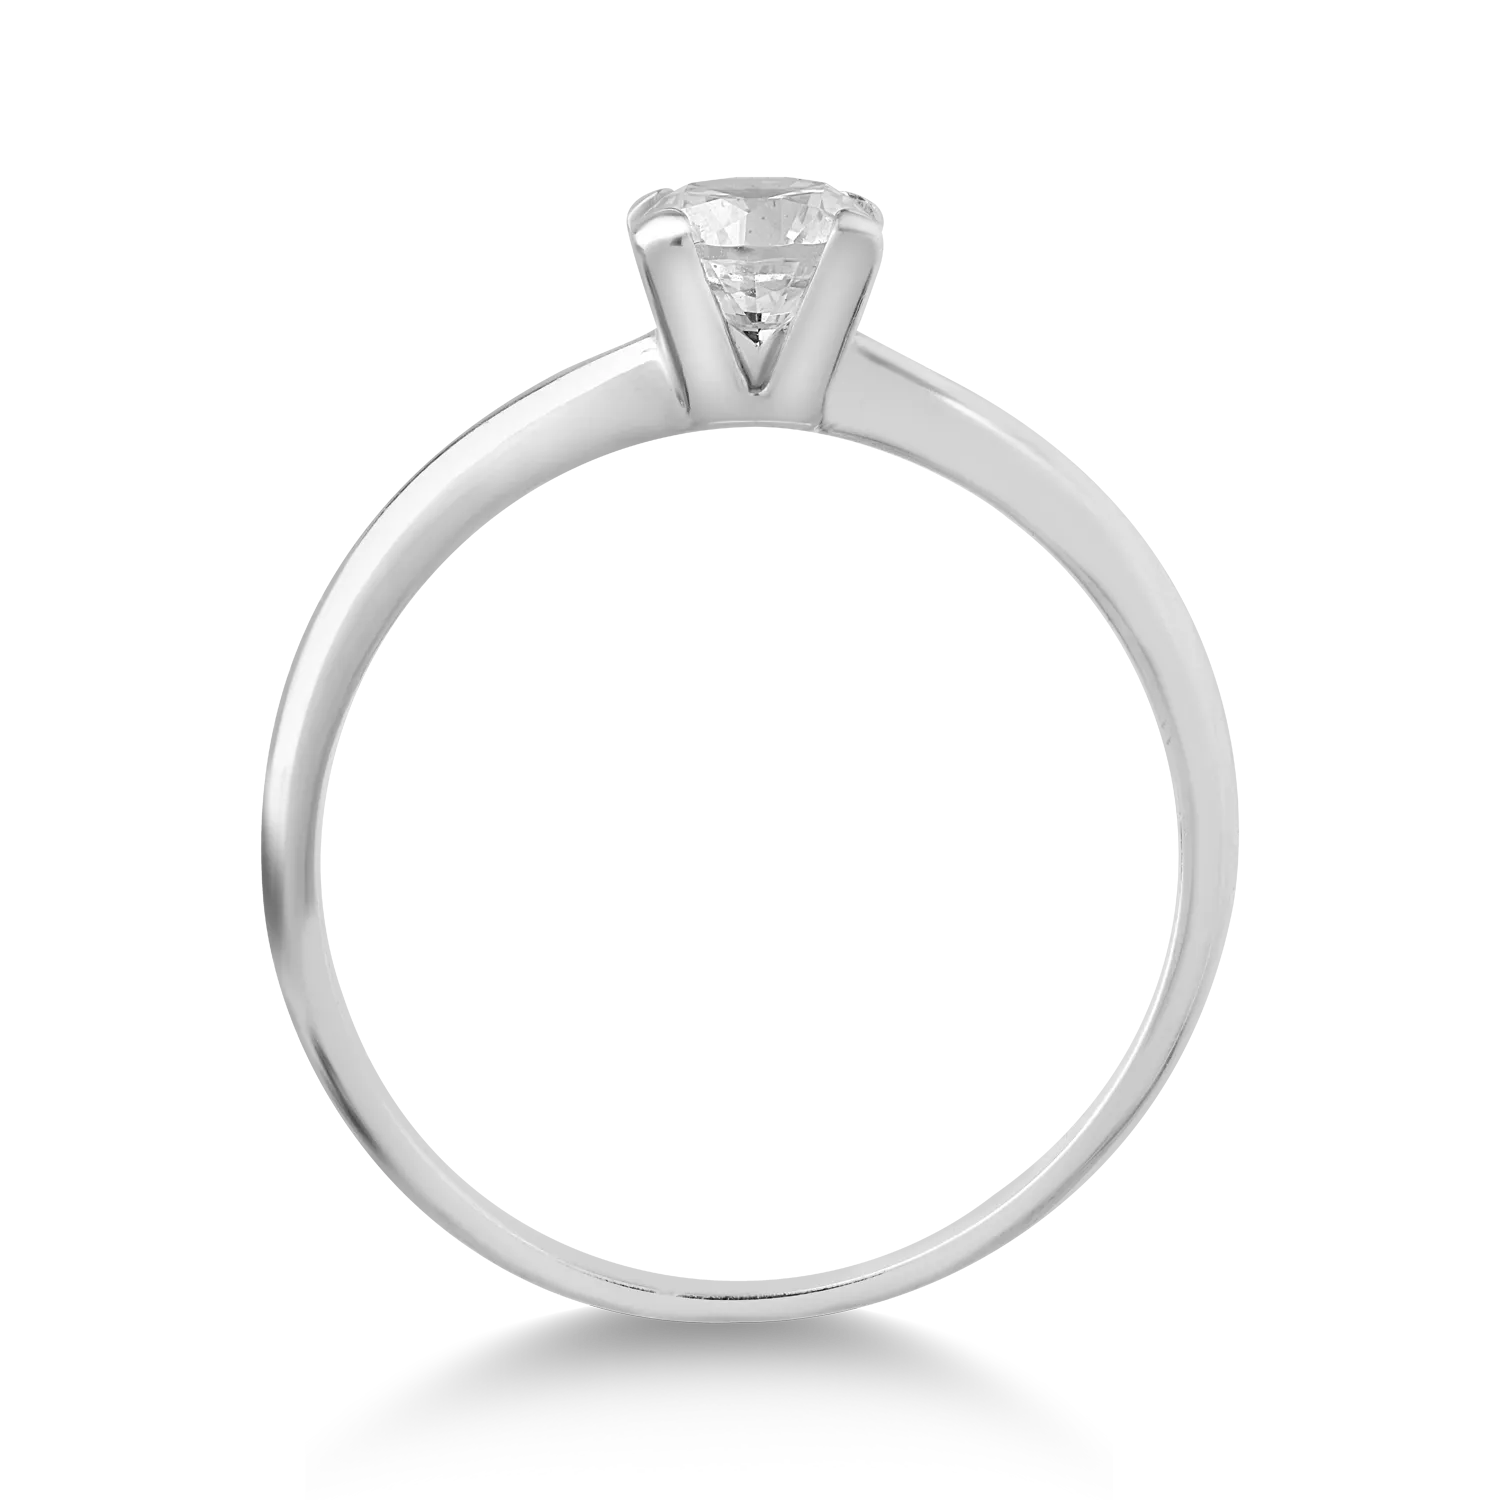 Годежен пръстен от 14K бяло злато